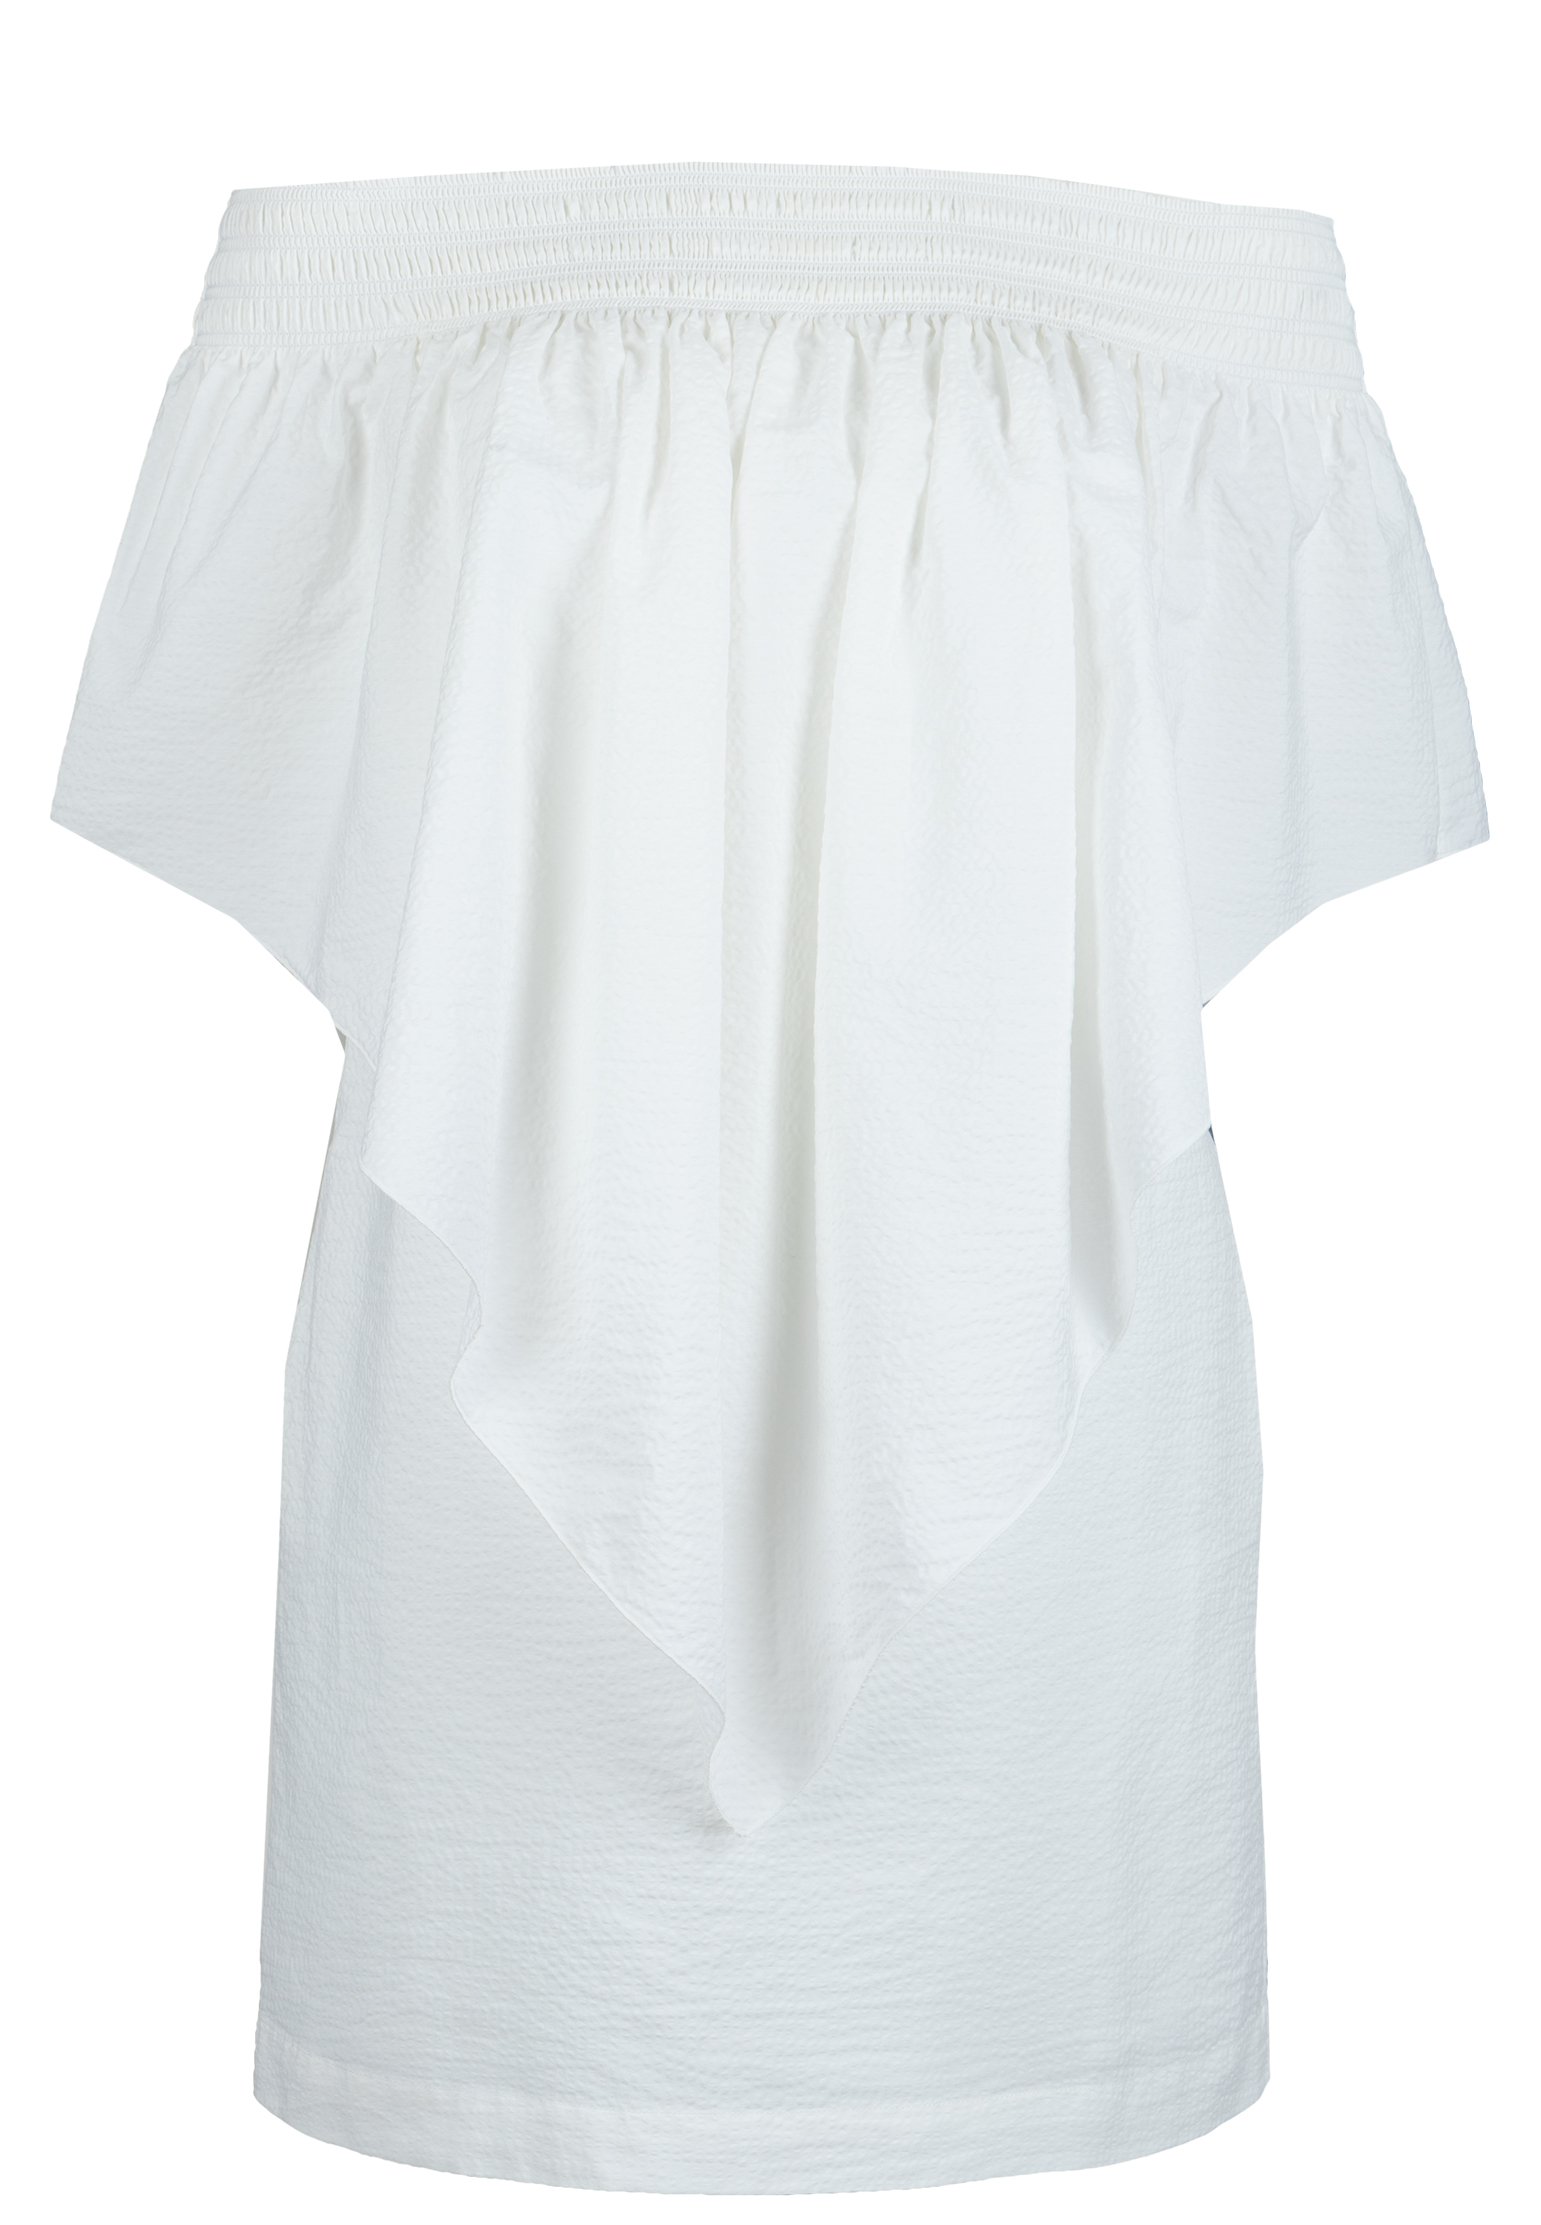 Платье женское FABIANA FILIPPI 107370 белое 44 IT